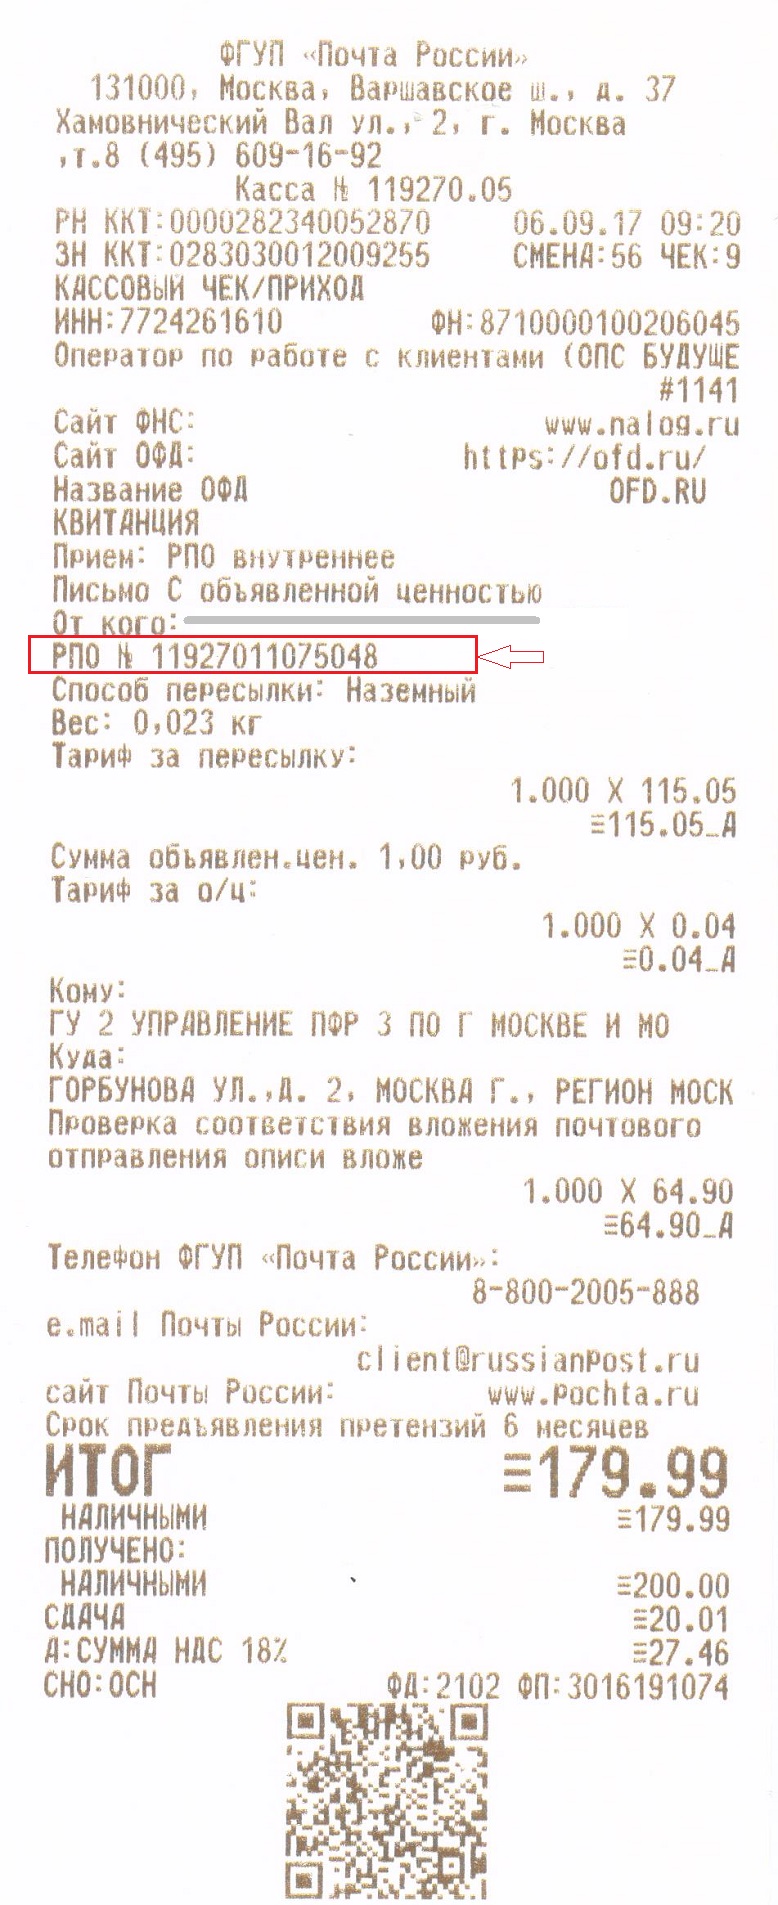 чек отправки почтового отправления по России